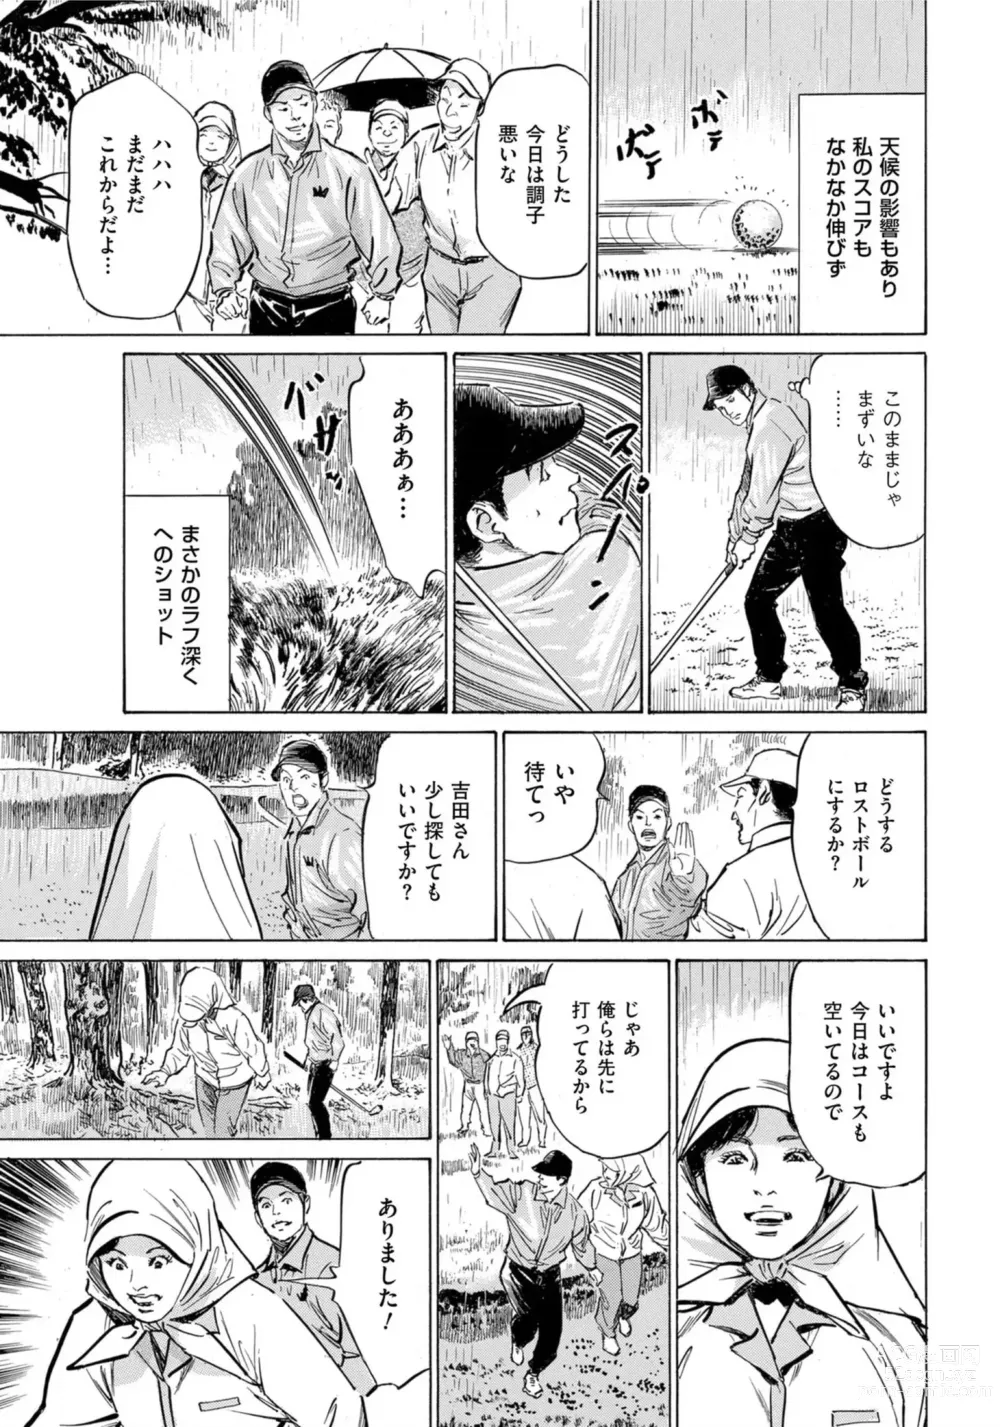 Page 8 of manga Hontou ni Atta Omowazu Zawatsuku Totteoki no Hanashi 14 episodes